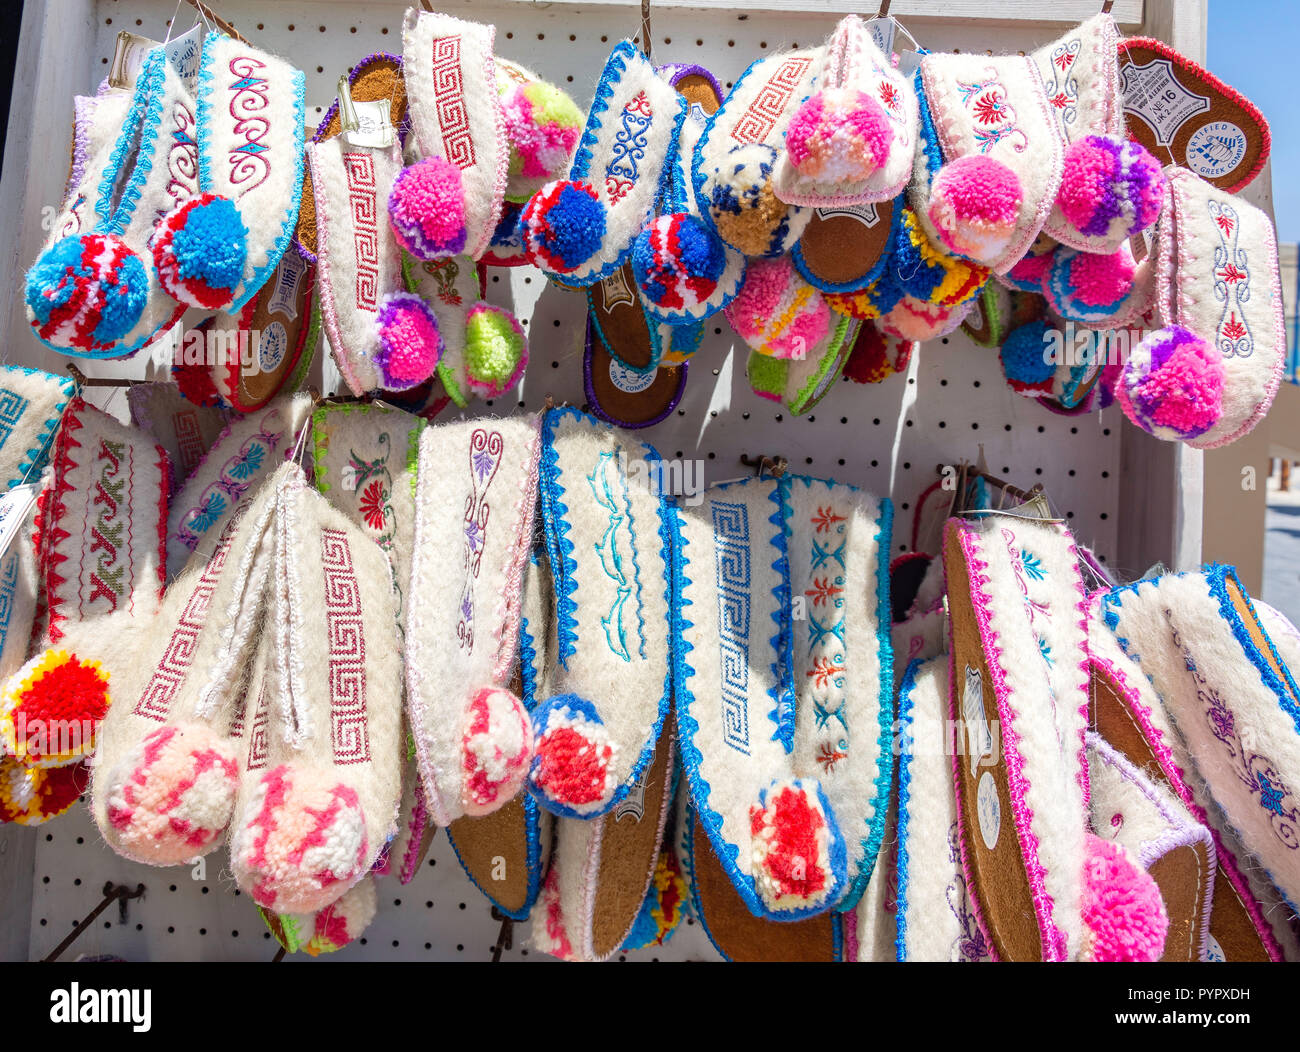 Greek traditional woollen slippers for sale, Avgoustou 17 Street, Heraklion (Irakleio), Irakleio Region, Crete (Kriti), Greece Stock Photo